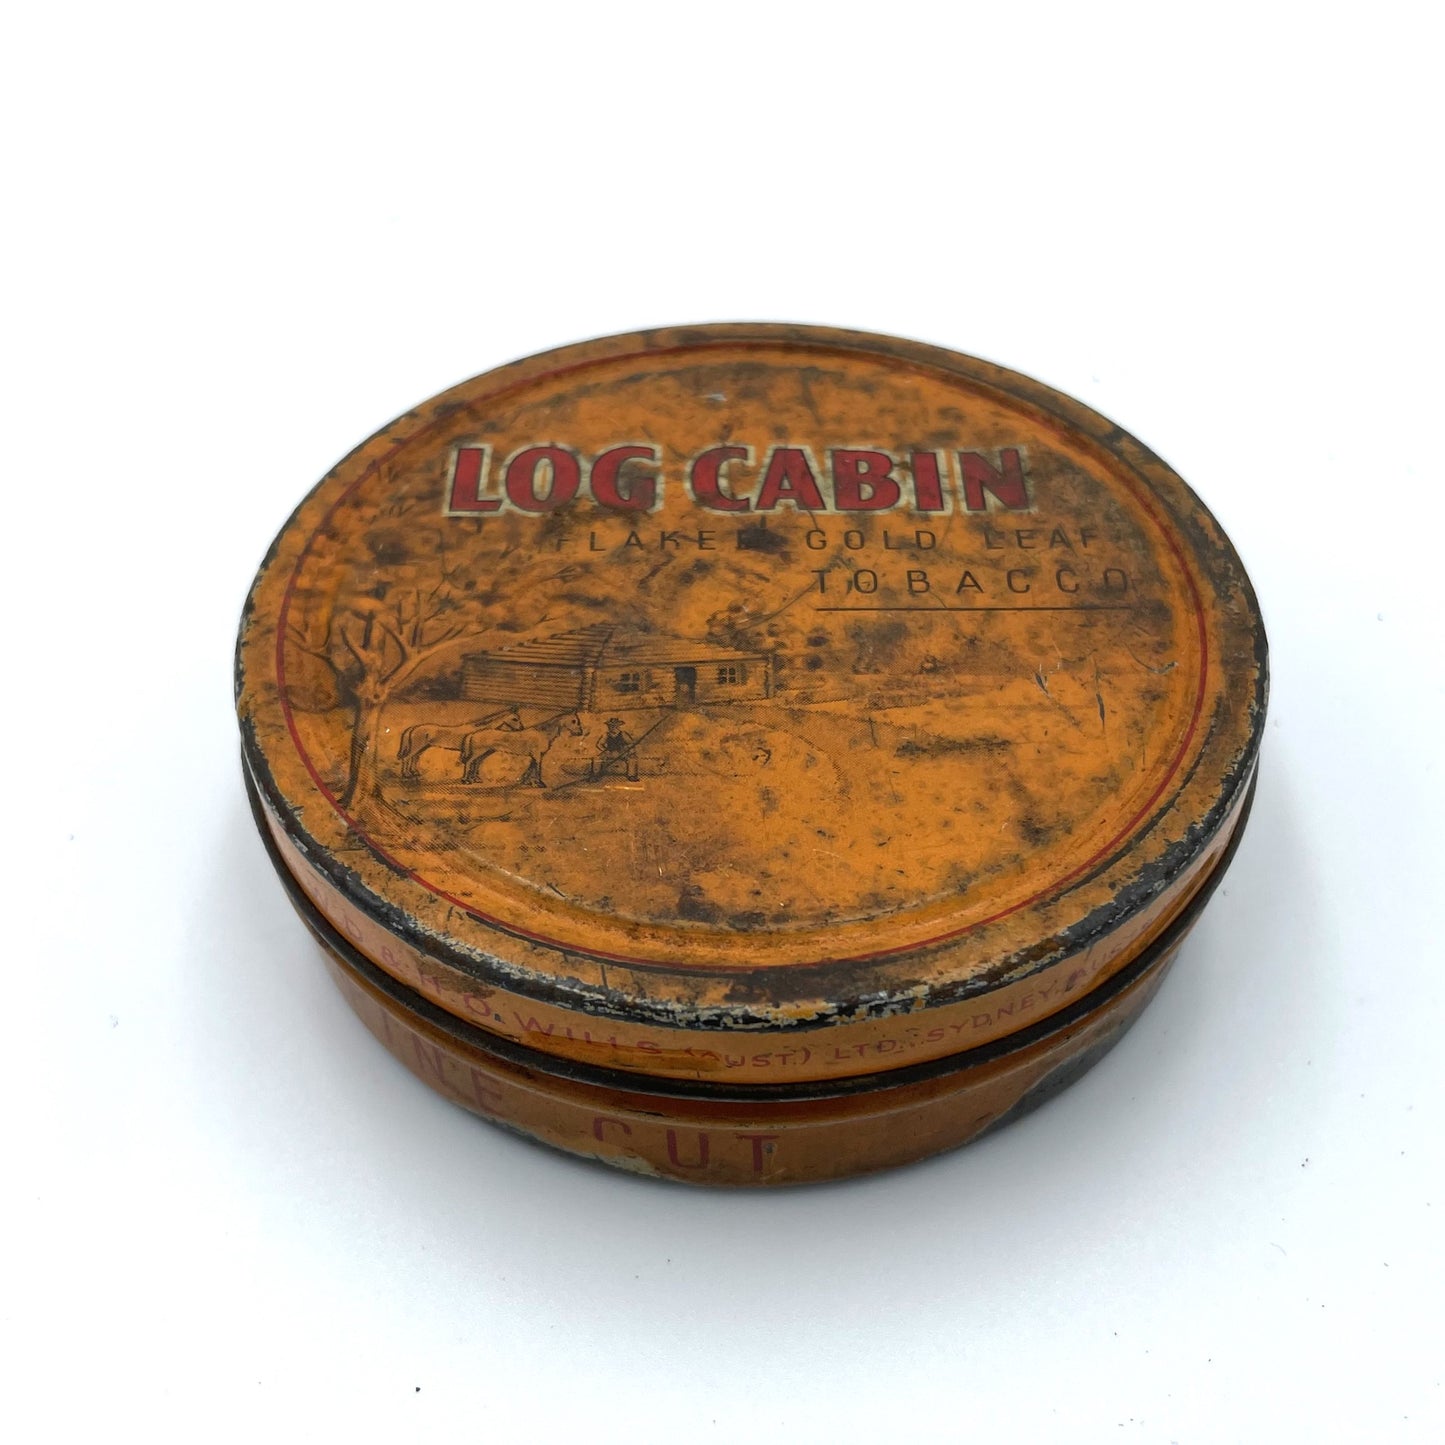 Vintage Log Cabin Flaked Gold Leaf Tobacco Tin - 8cm